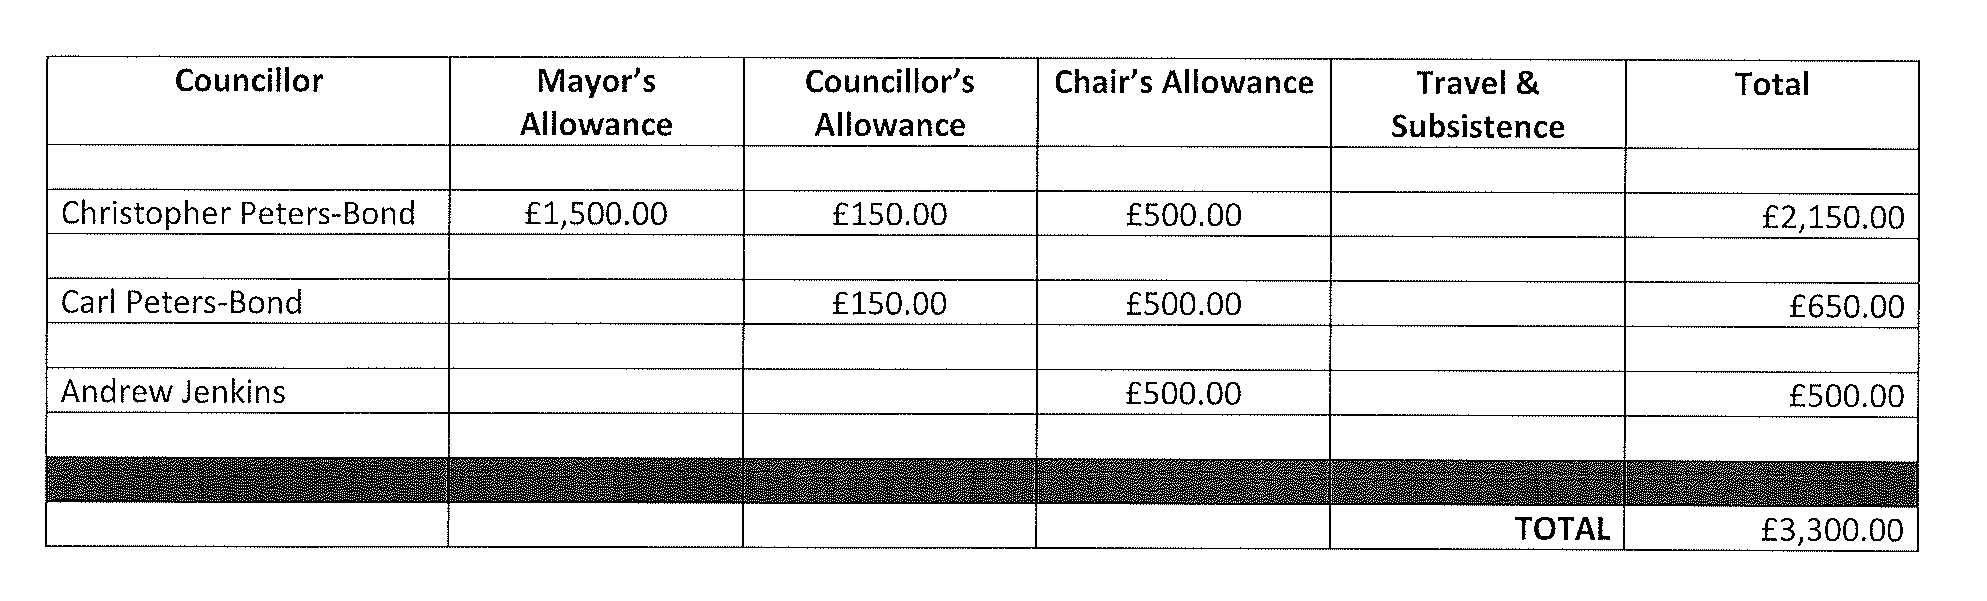 Councillor expenses 2021-22